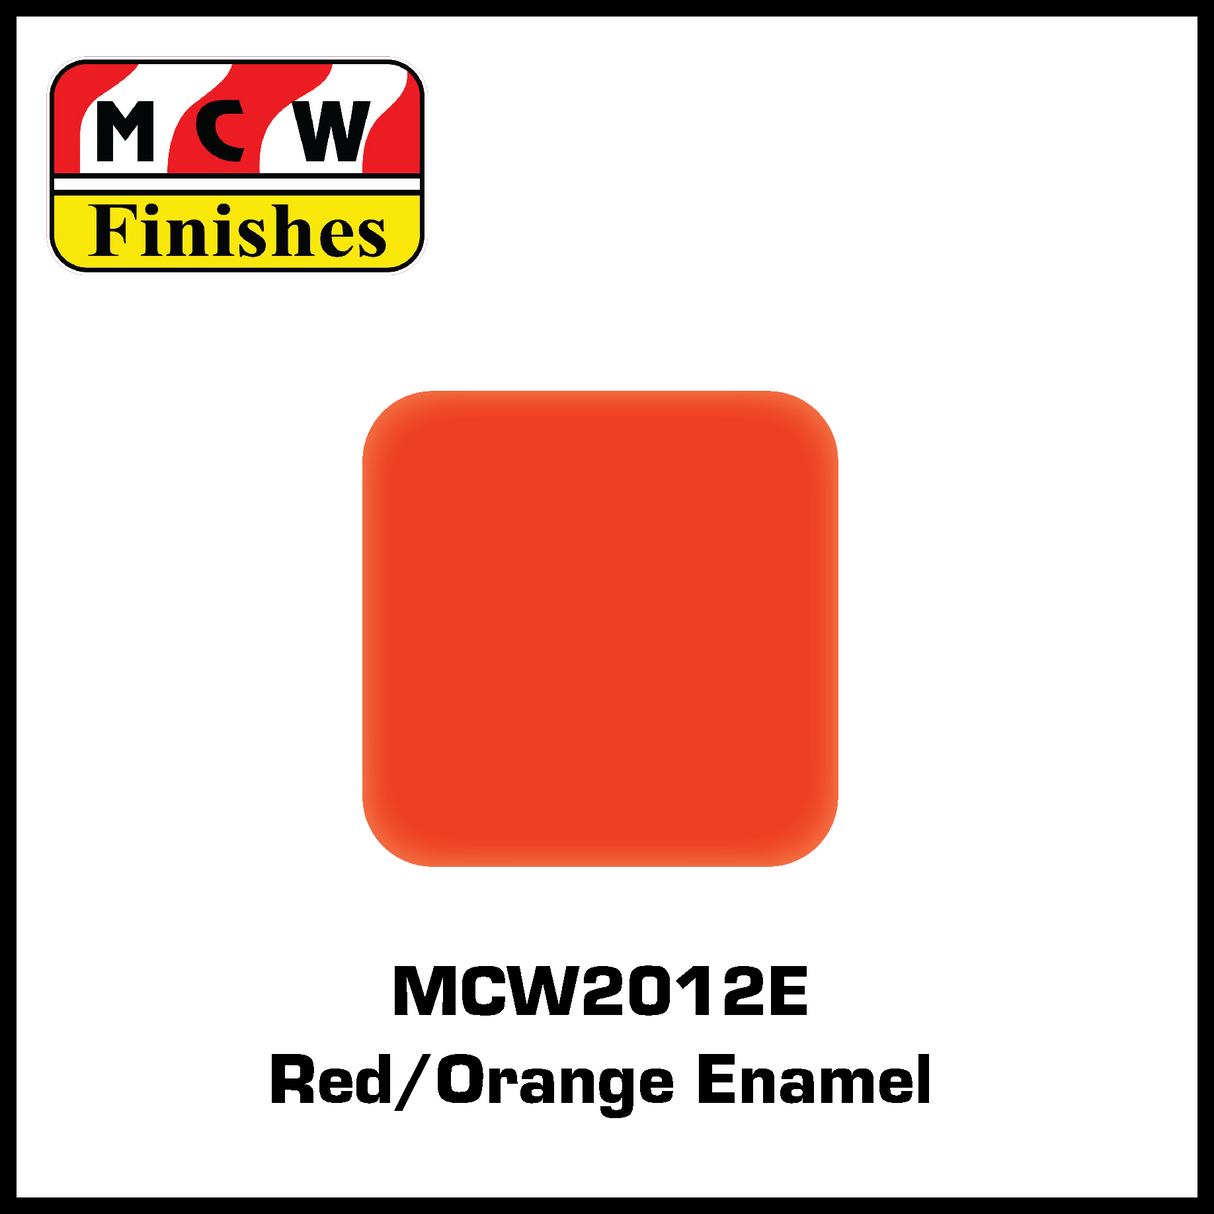 MCW Finishes 2012E Red/Orange Enamel